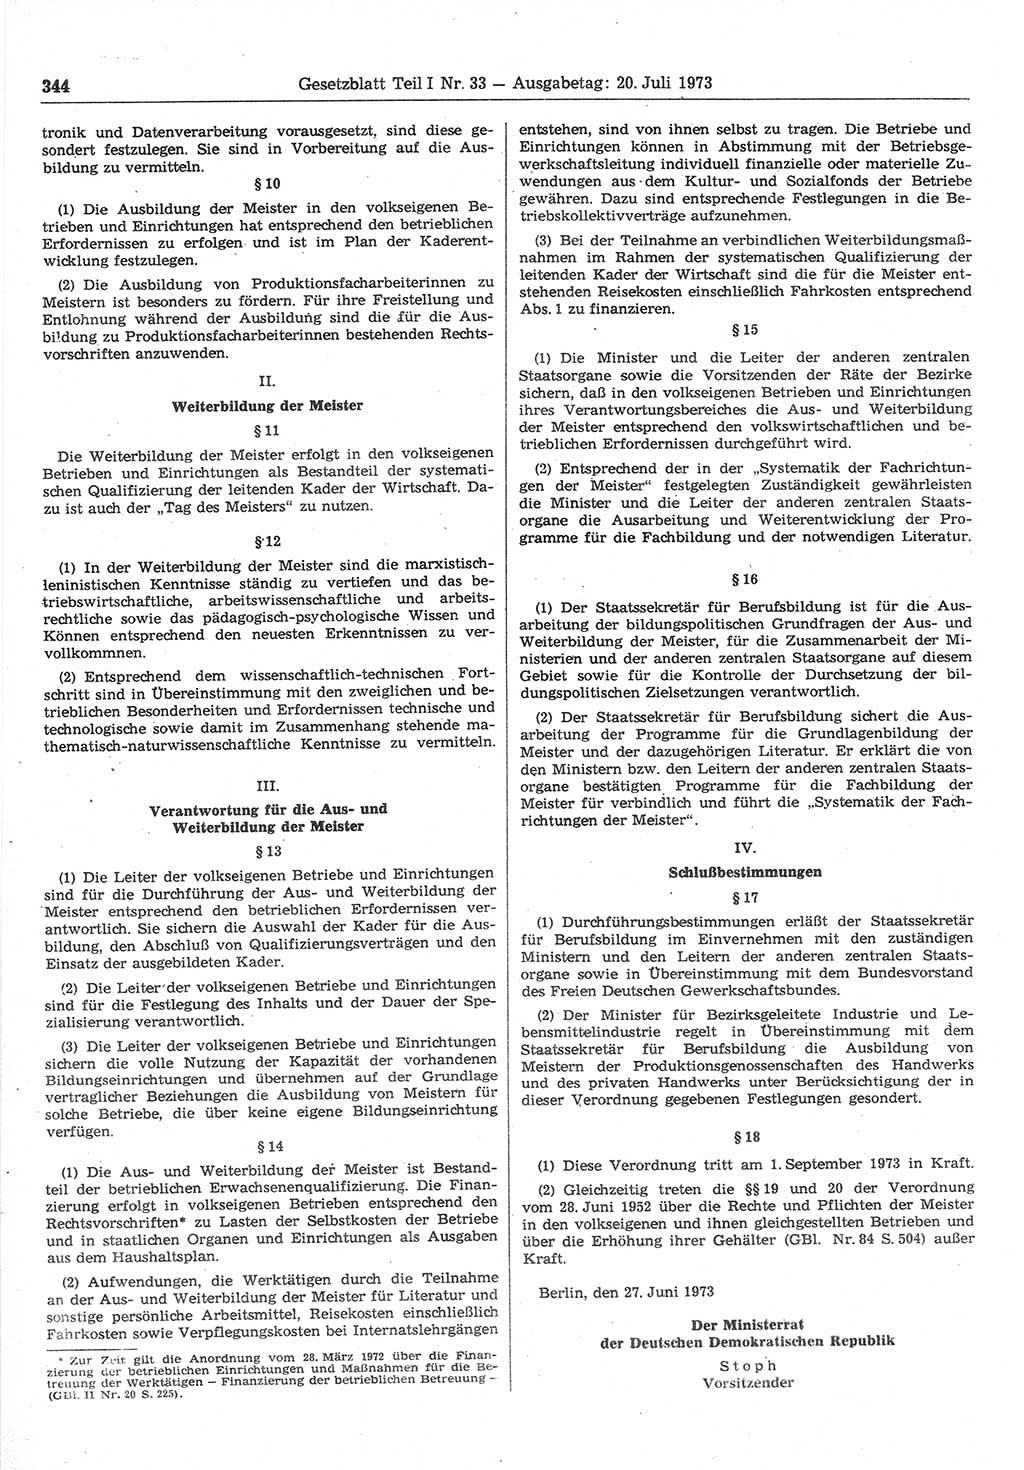 Gesetzblatt (GBl.) der Deutschen Demokratischen Republik (DDR) Teil Ⅰ 1973, Seite 344 (GBl. DDR Ⅰ 1973, S. 344)